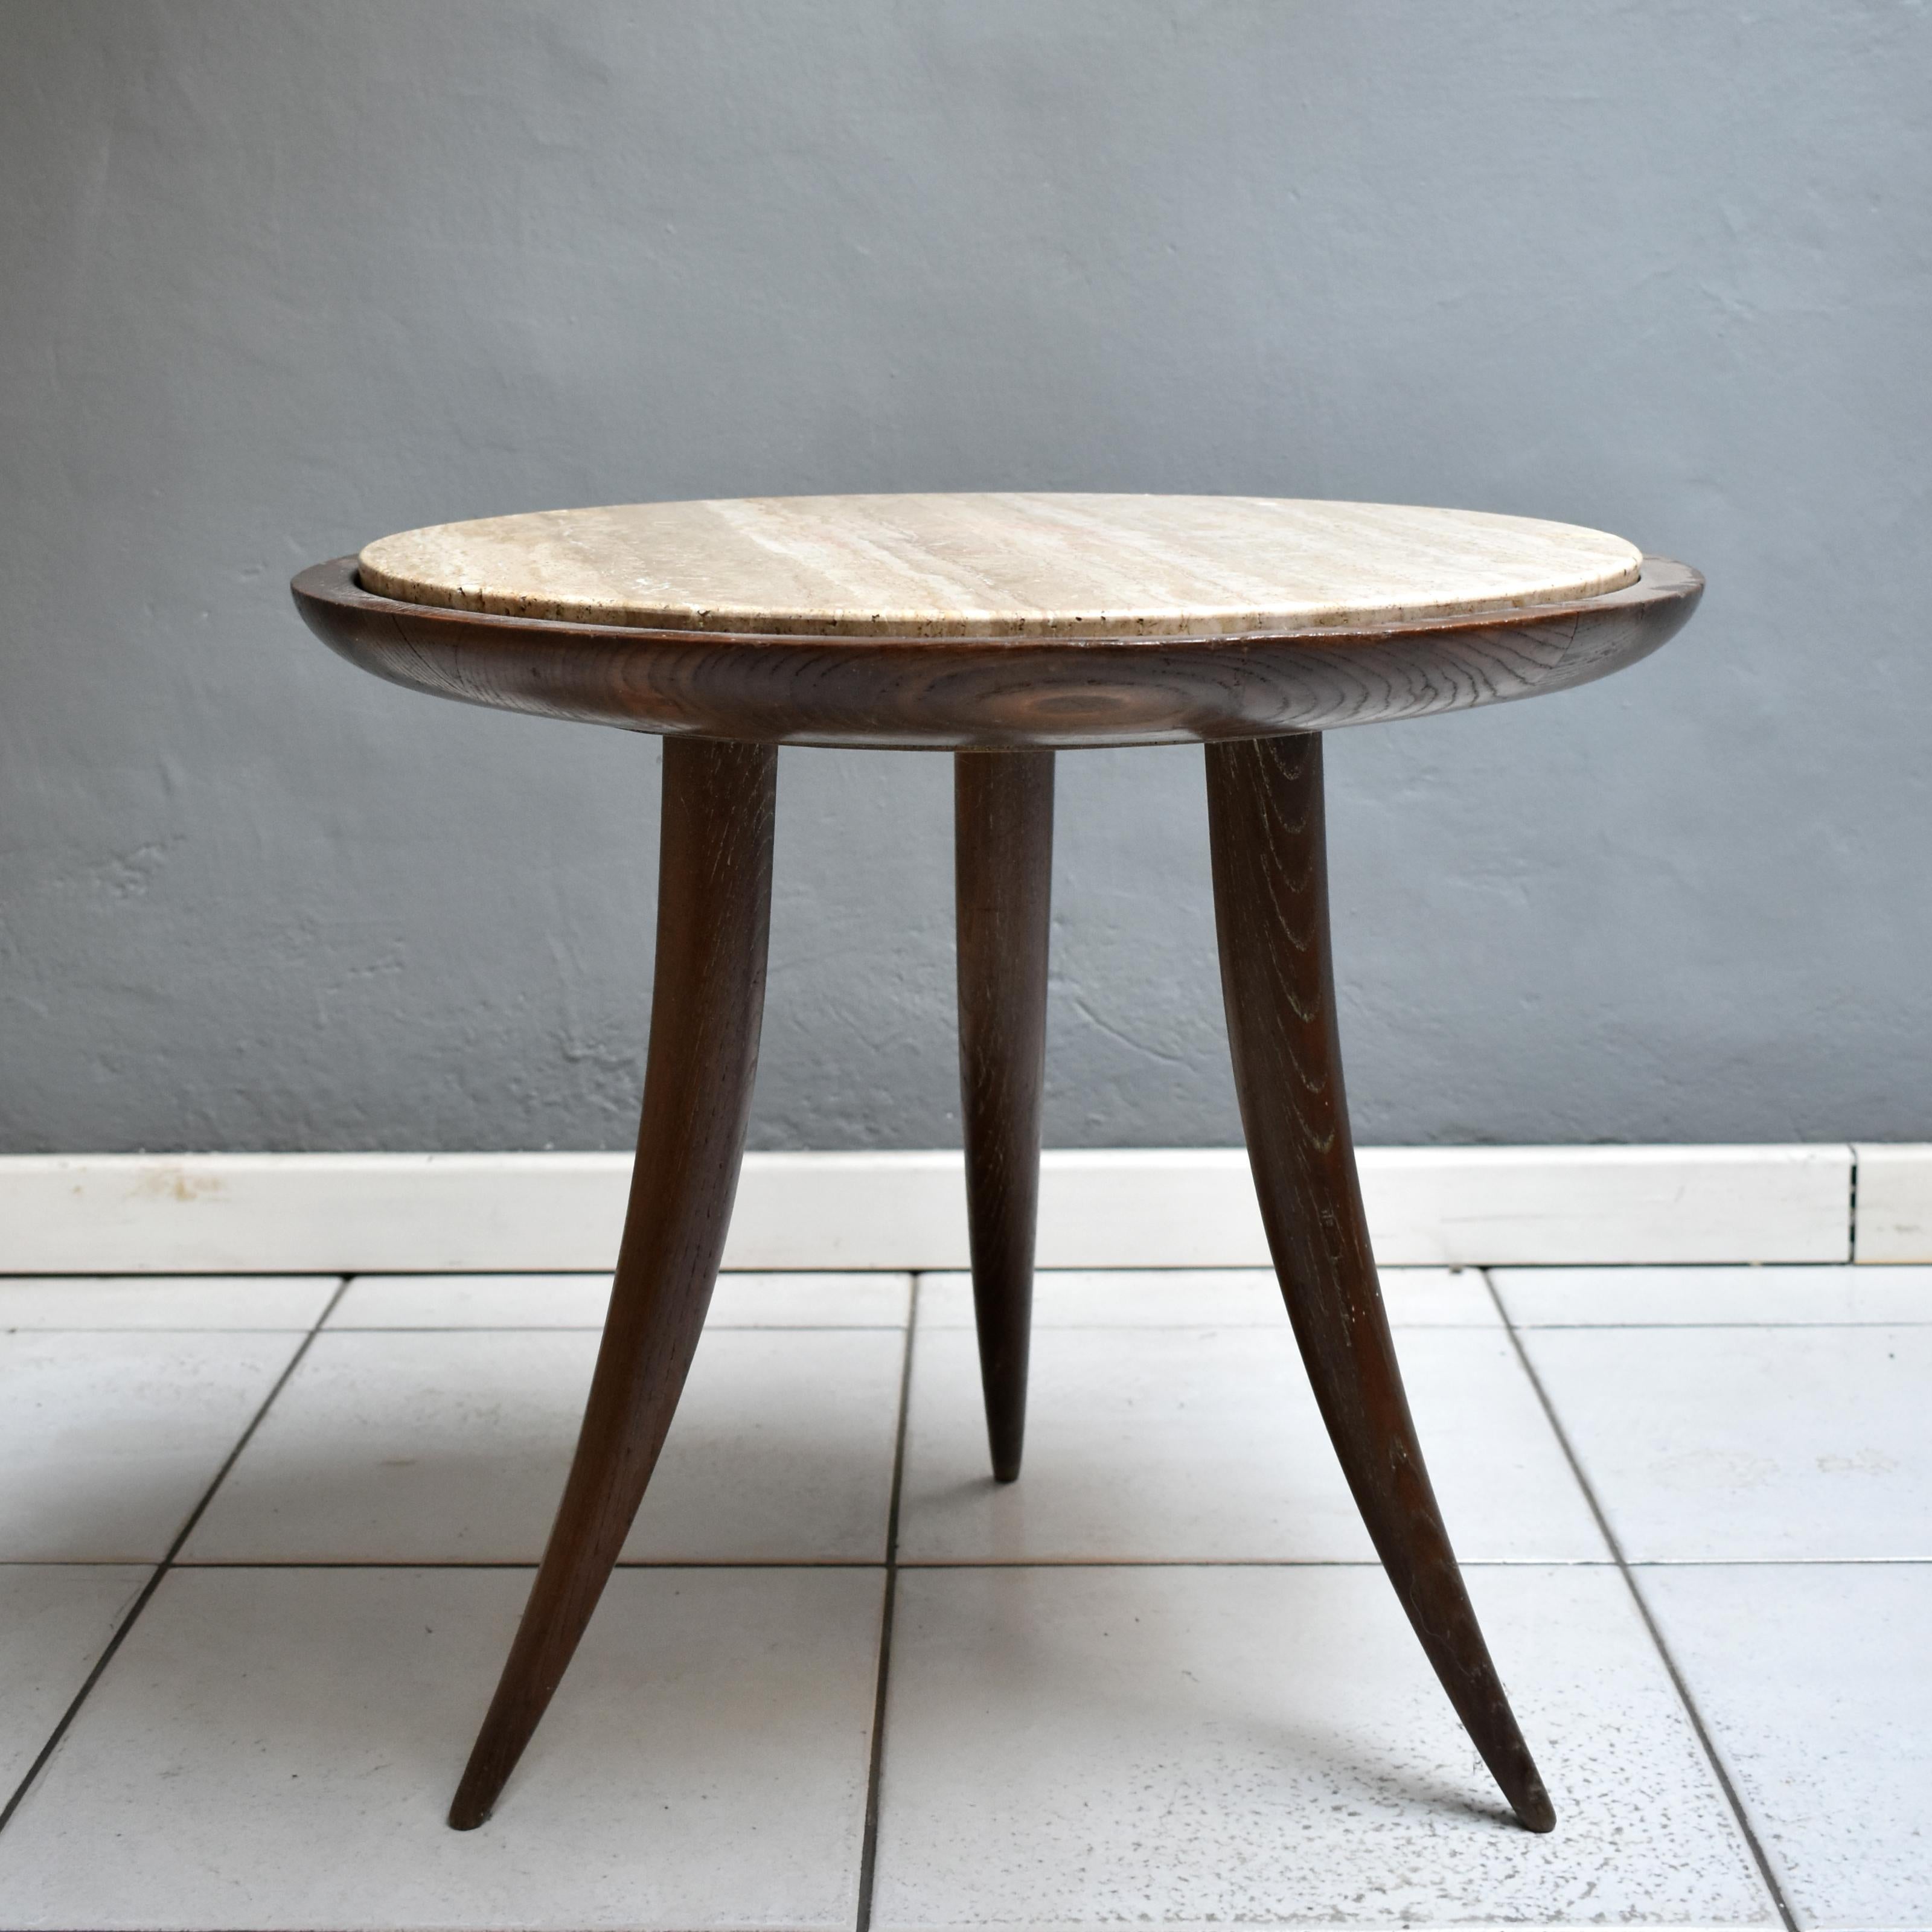 Table basse ronde vintage en bois et marbre travertin.
Table basse ou table de salon des années 1950, fabrication italienne.
La table basse est composée d'un cadre en bois à trois pieds et d'un plateau en marbre.